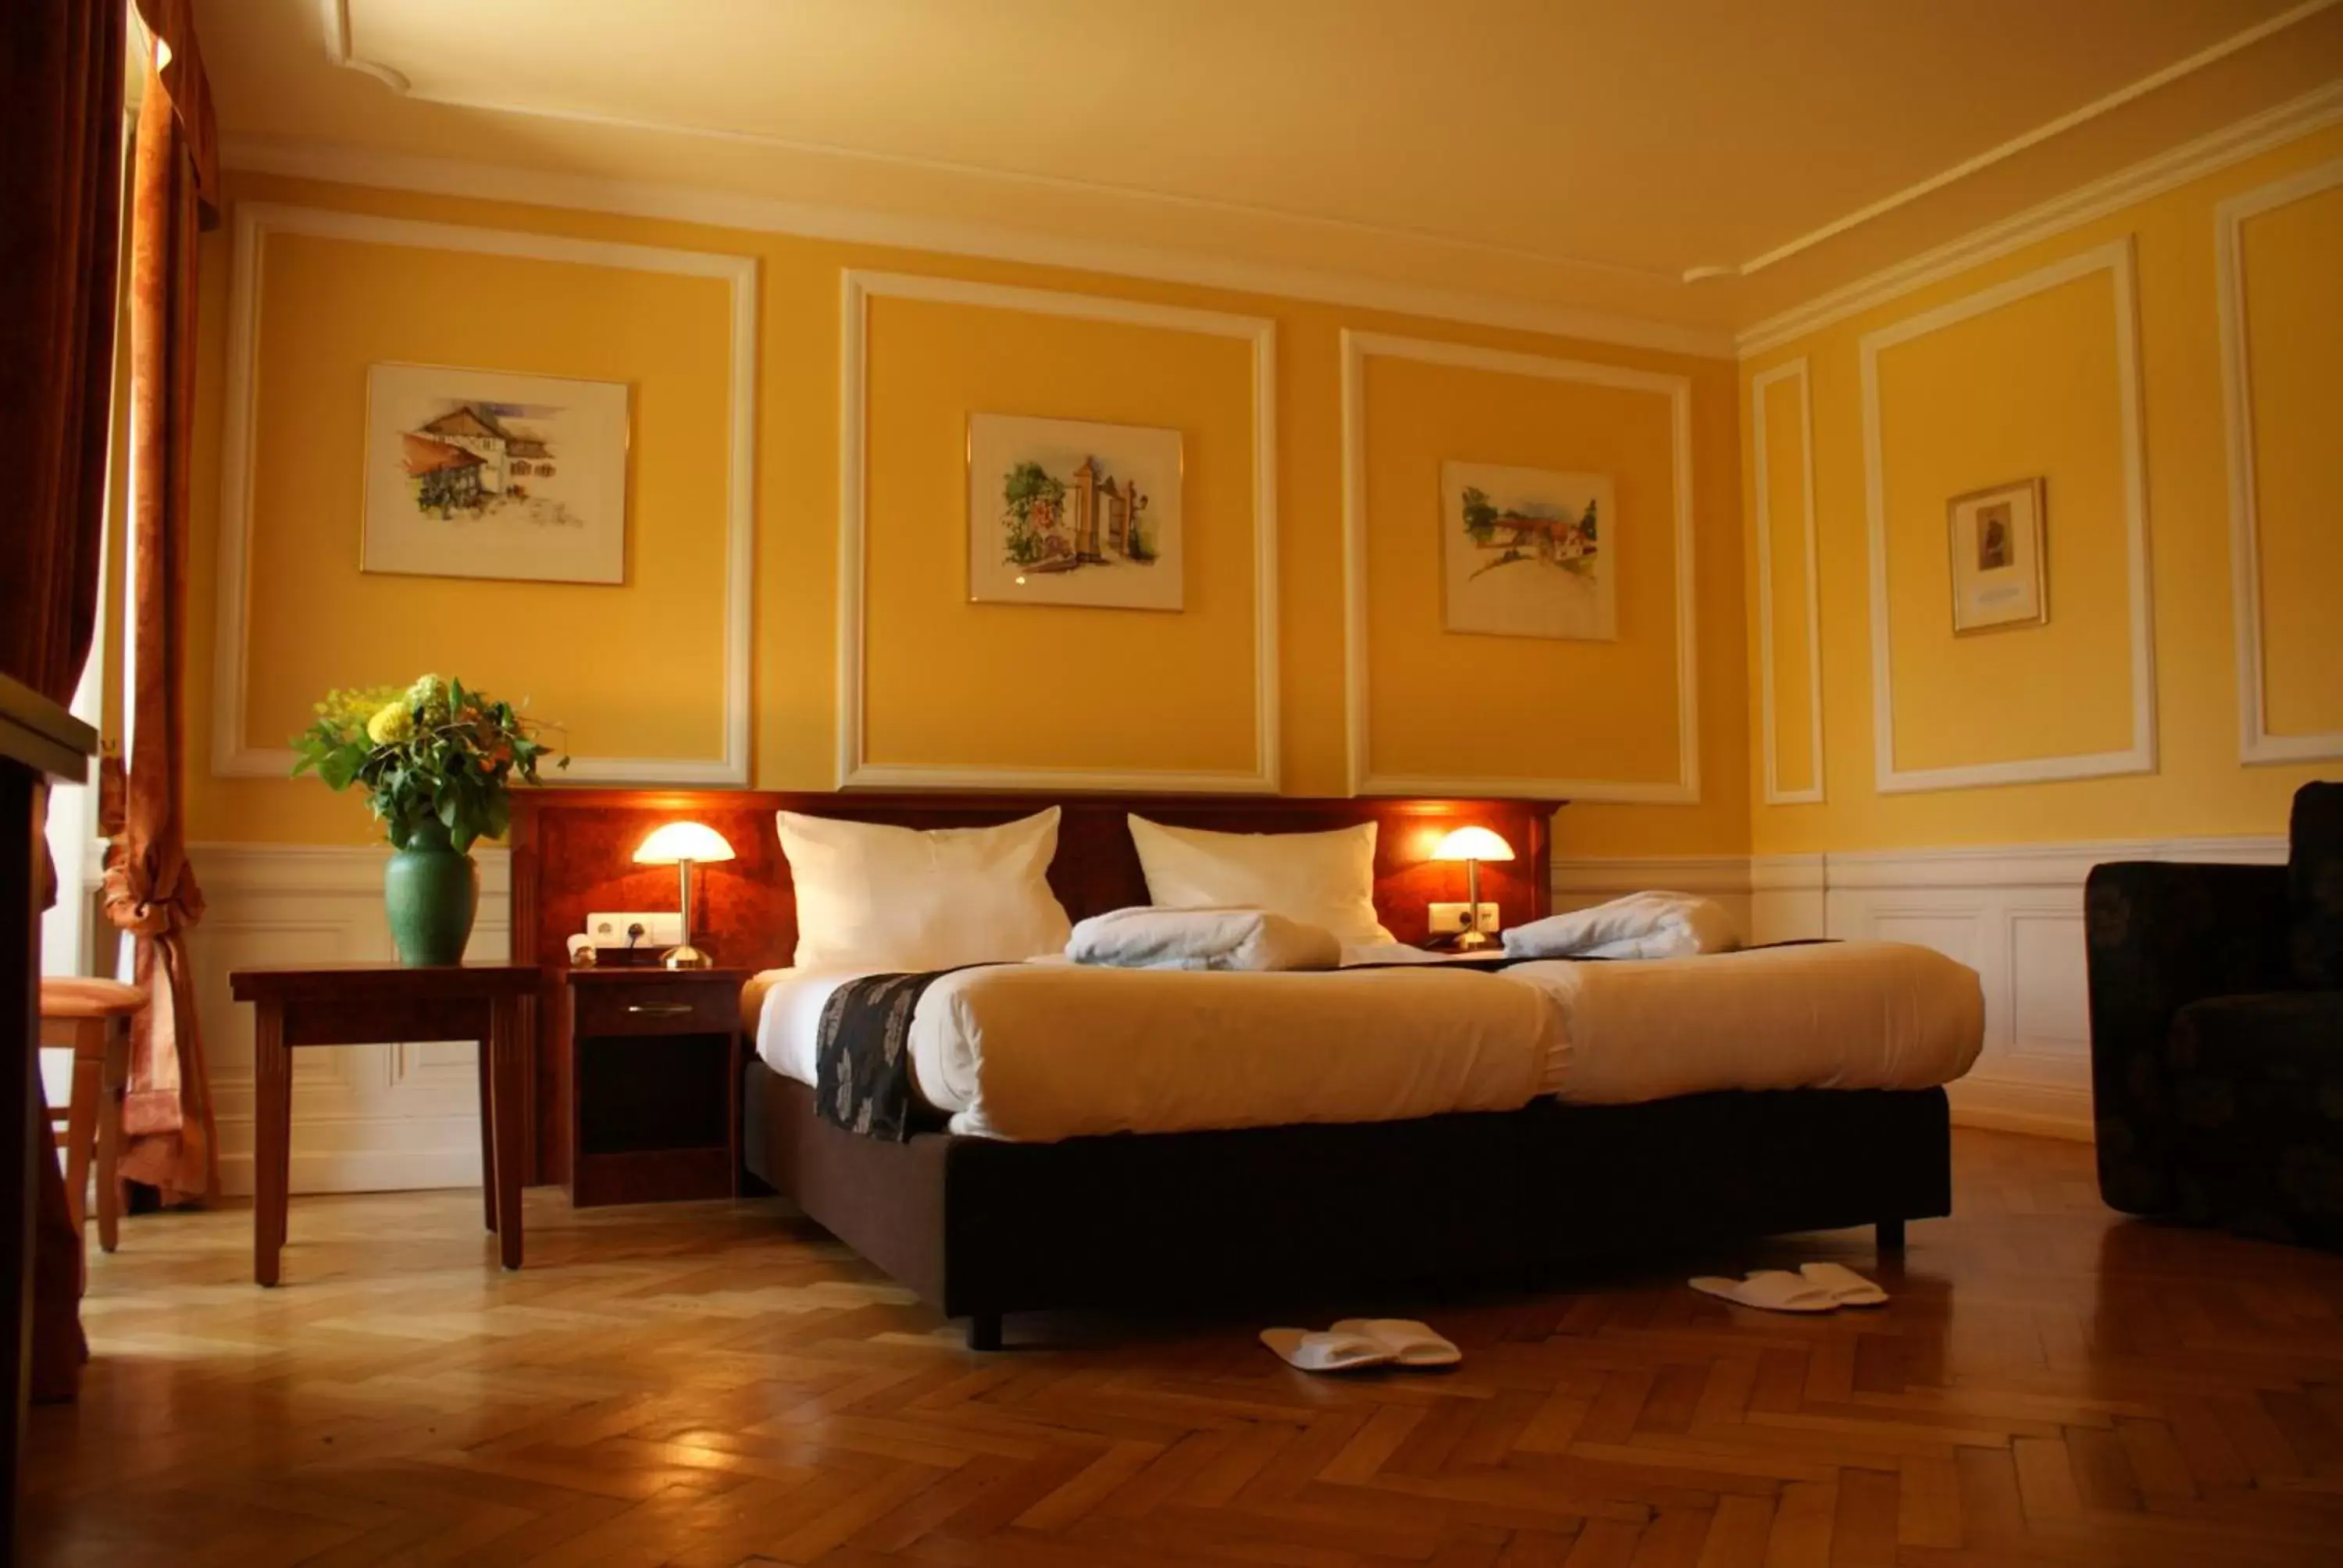 Bed, Room Photo in Château de Pourtalès